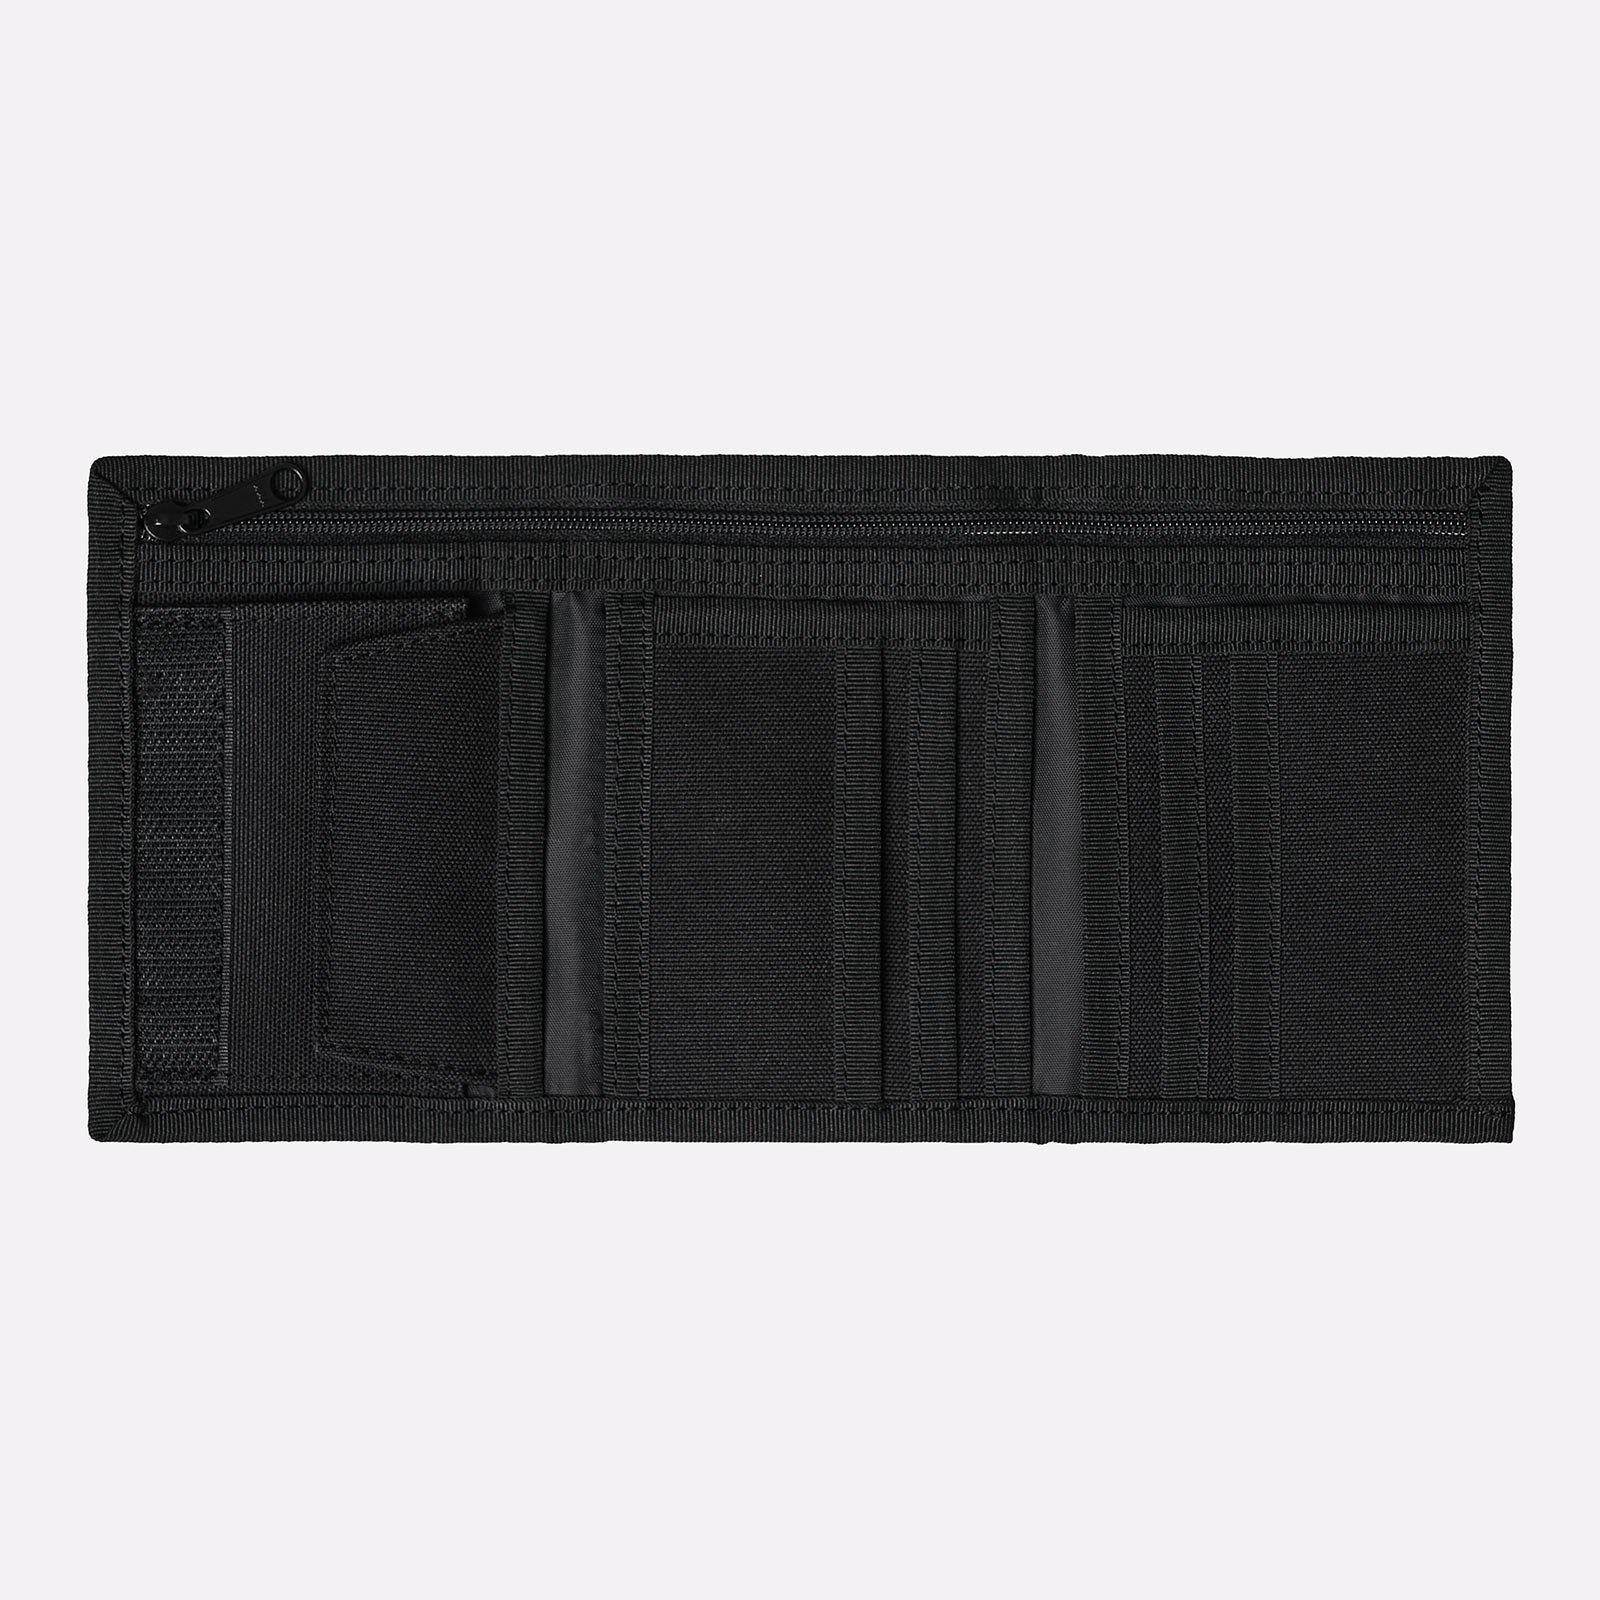 бумажник Carhartt WIP Alec Wallet  (I031471-black)  - цена, описание, фото 3